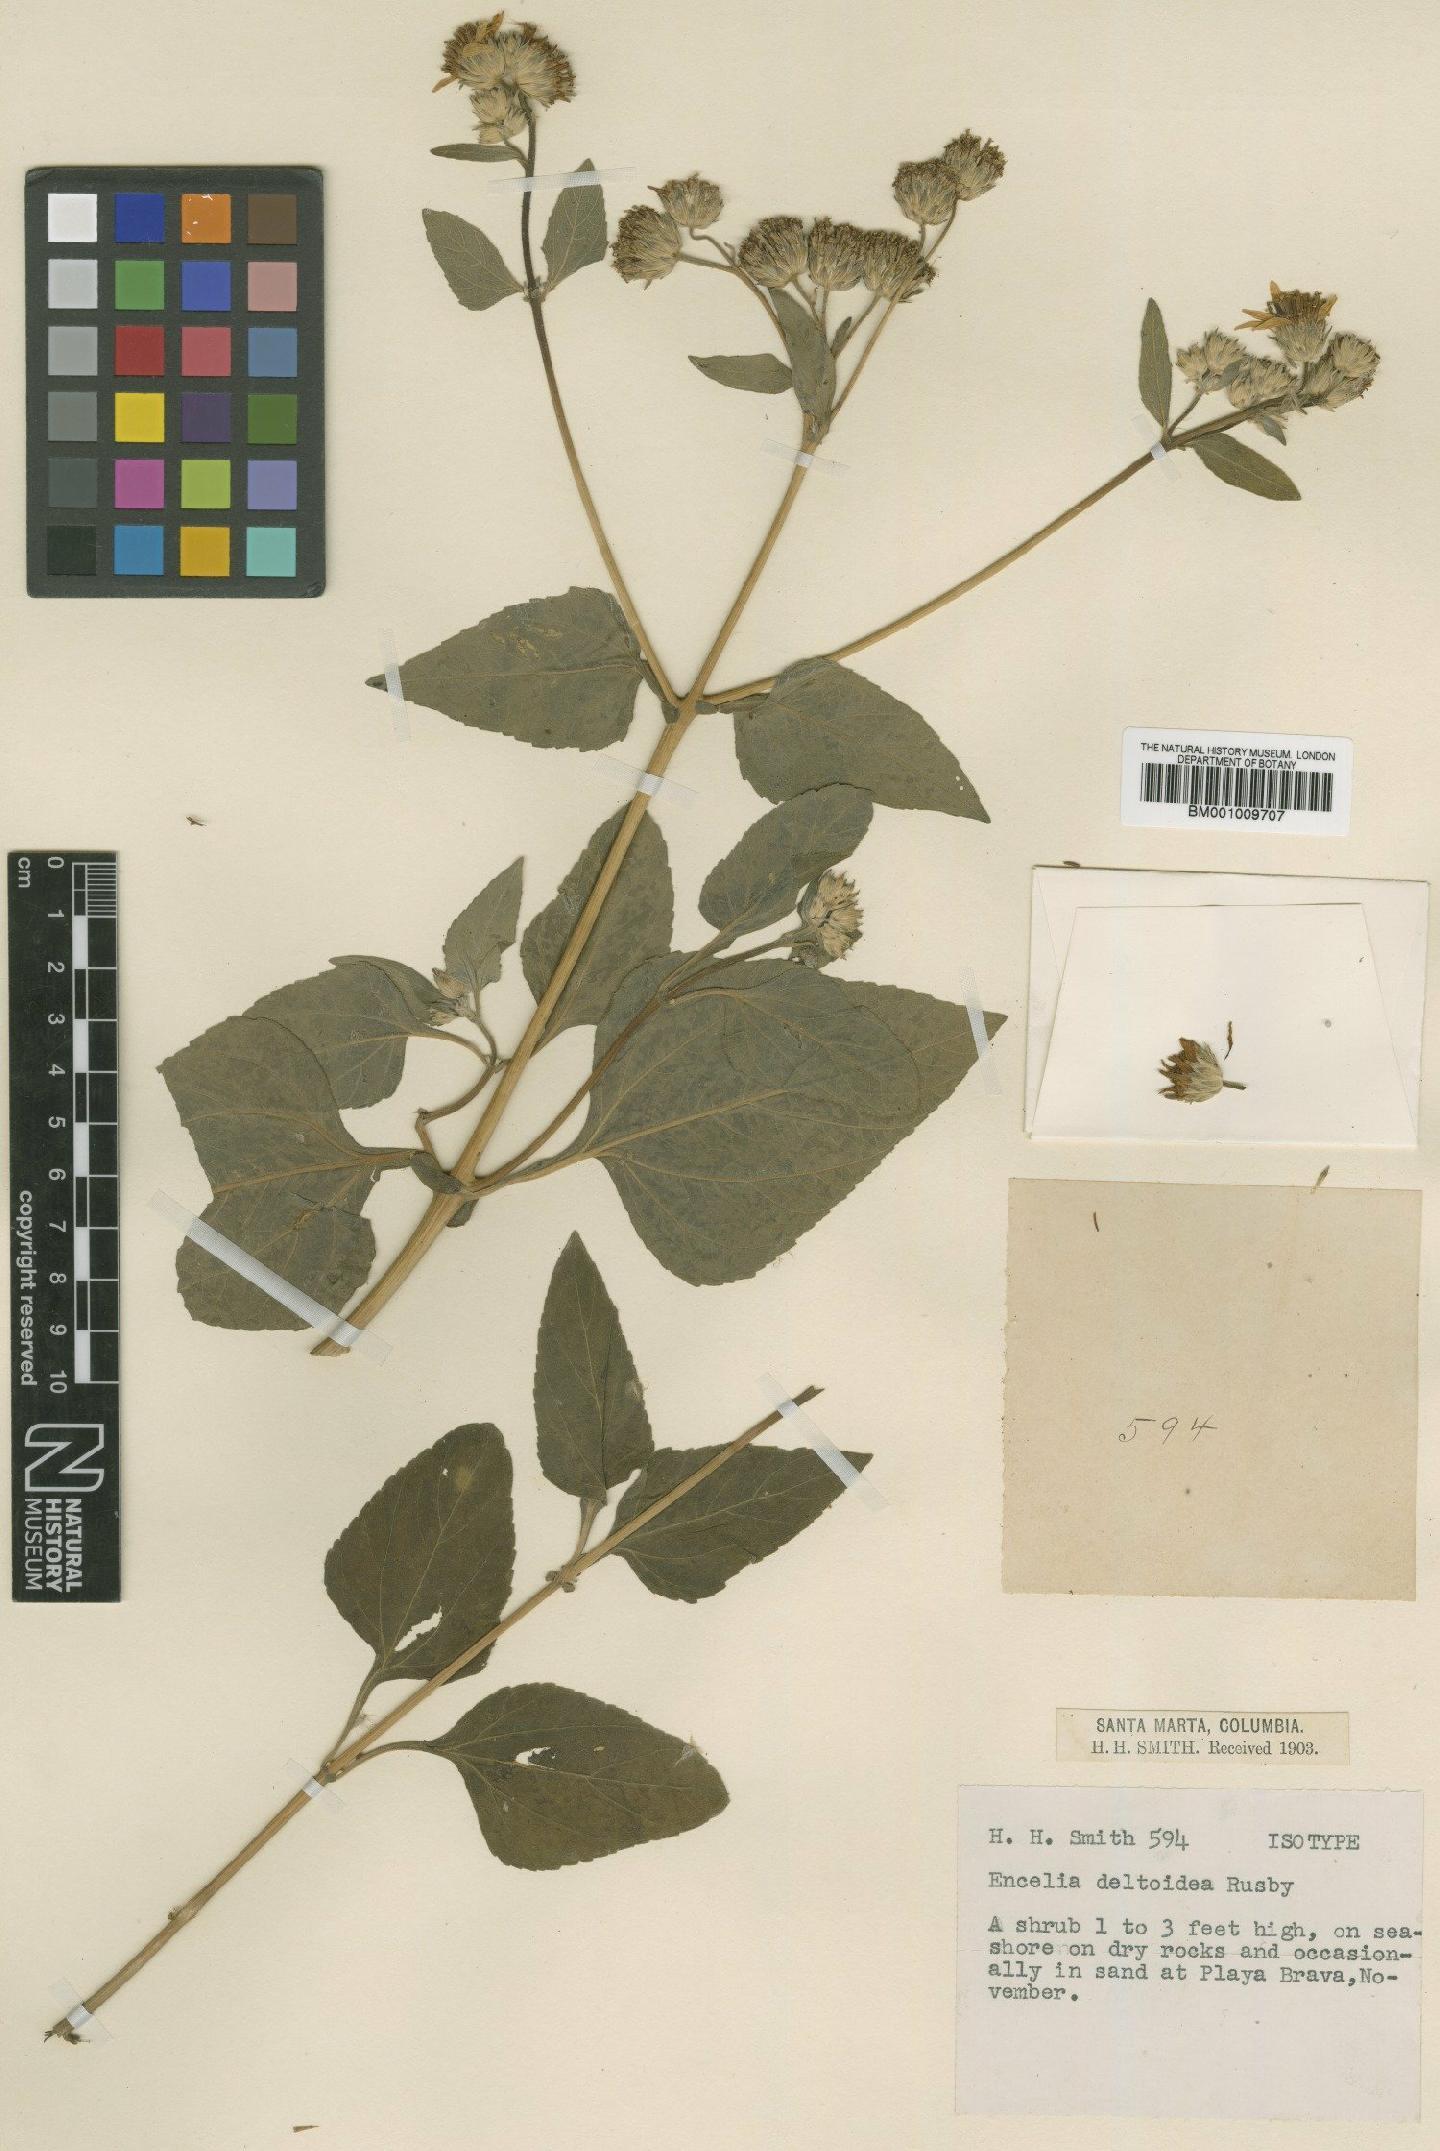 To NHMUK collection (Encelia deltoidea Rusby; Isotype; NHMUK:ecatalogue:620040)